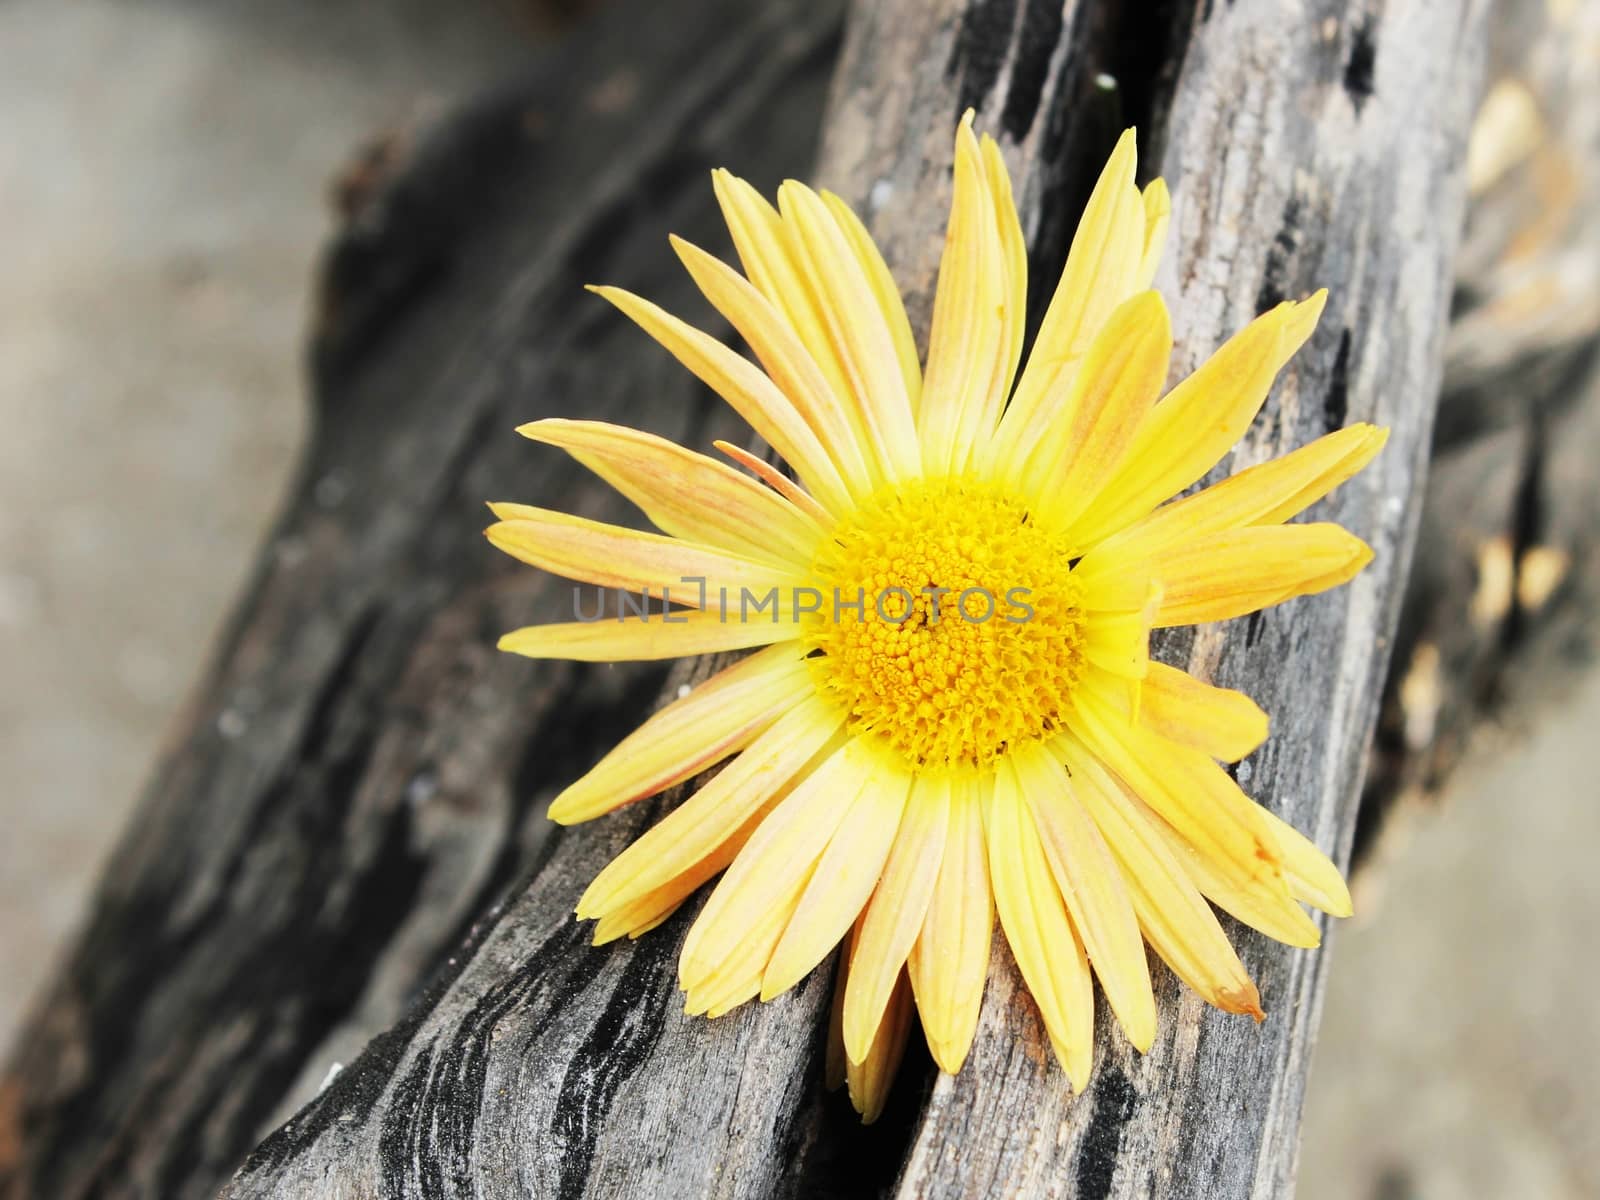 Yellow Chrysanthemum Caught in the Woods by RichieThakur